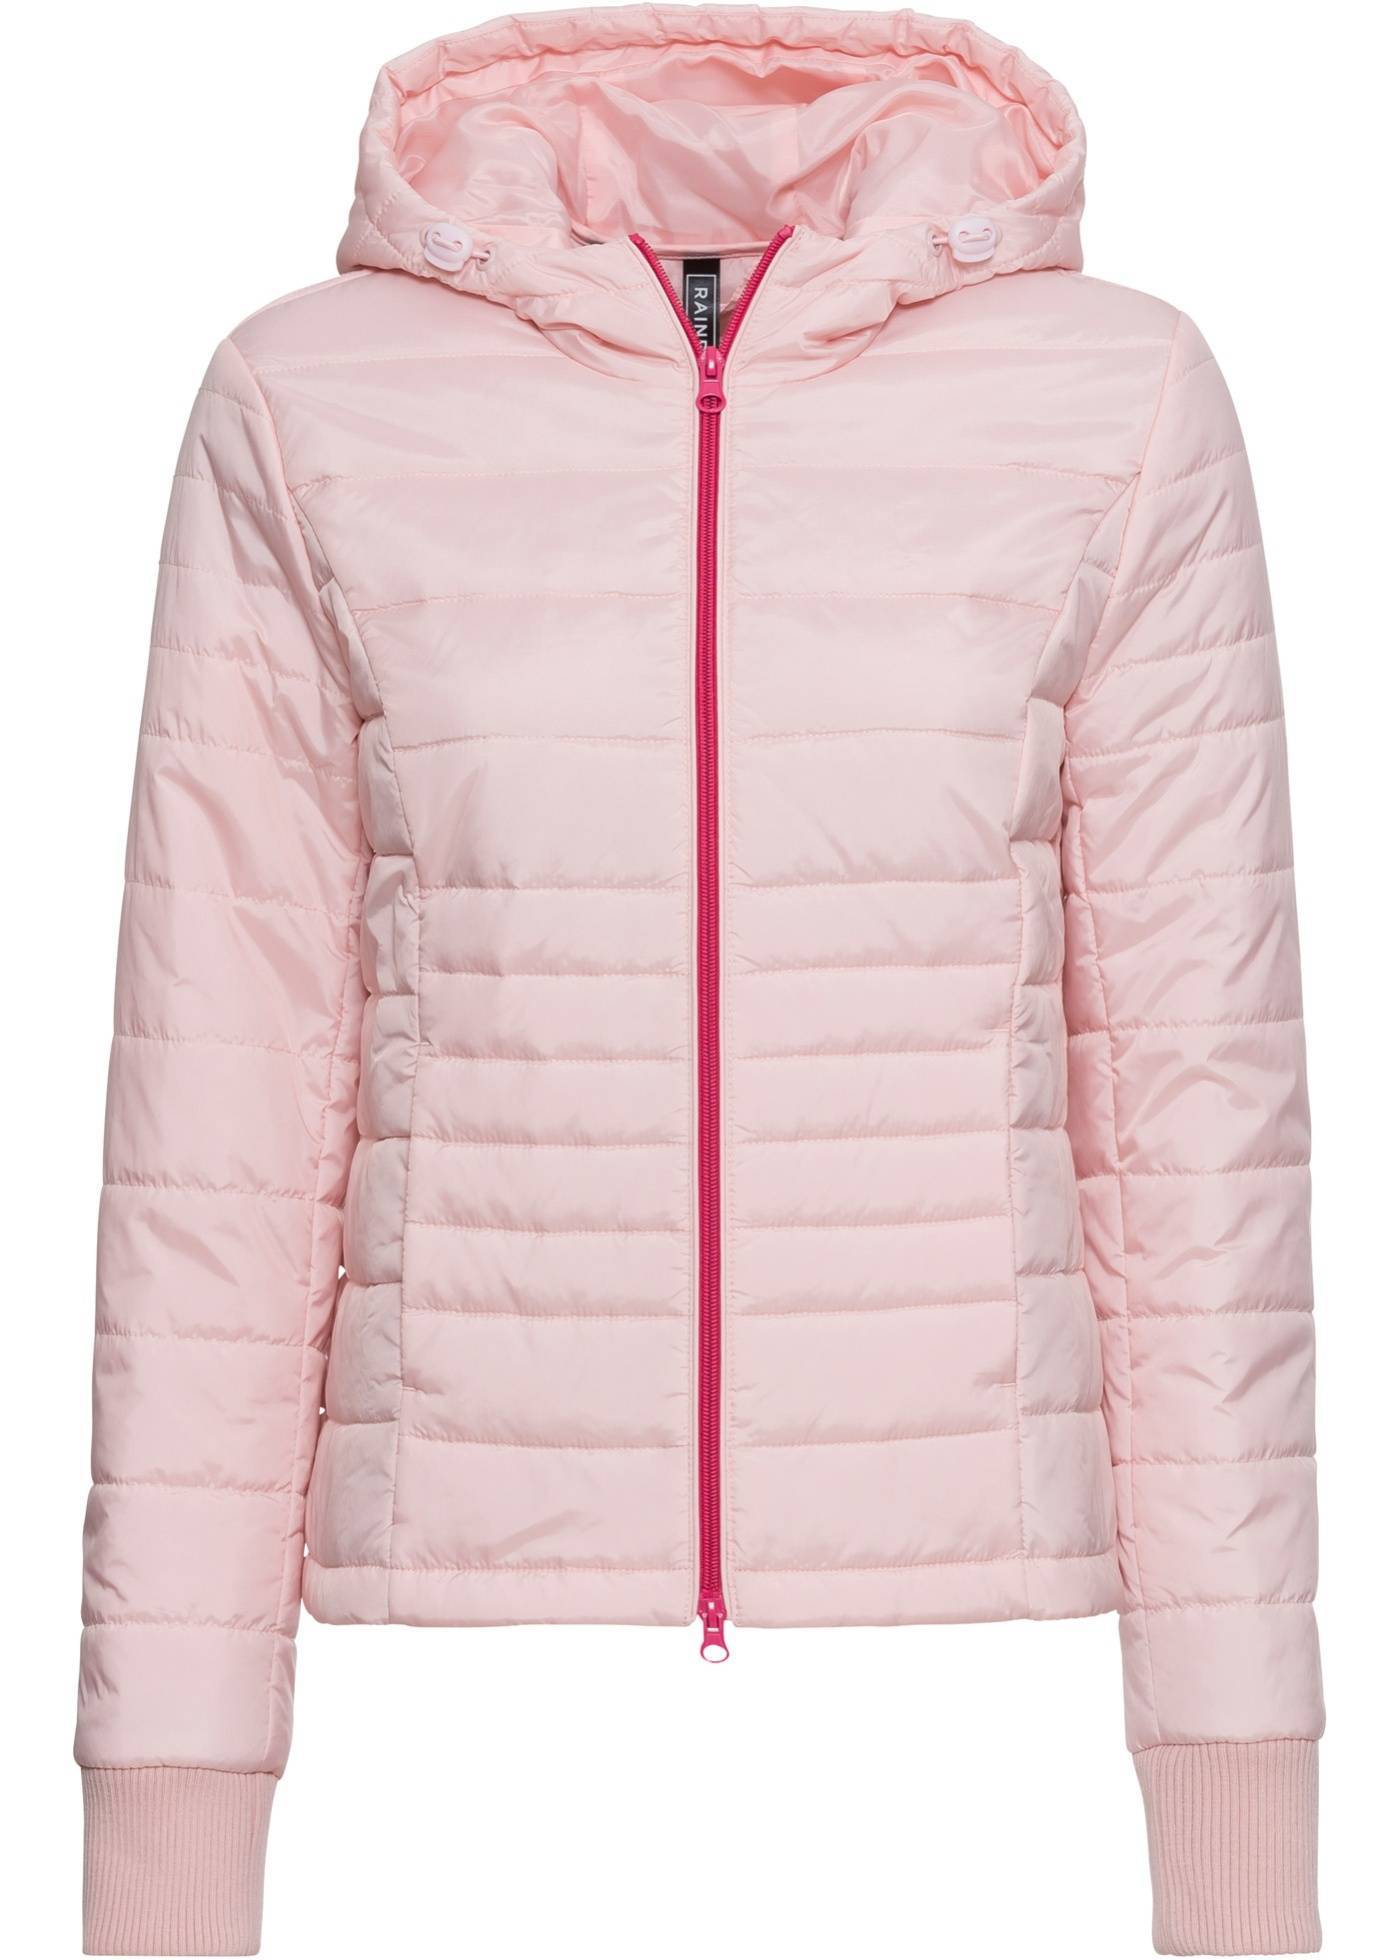 Розовая куртка женская Бонприкс